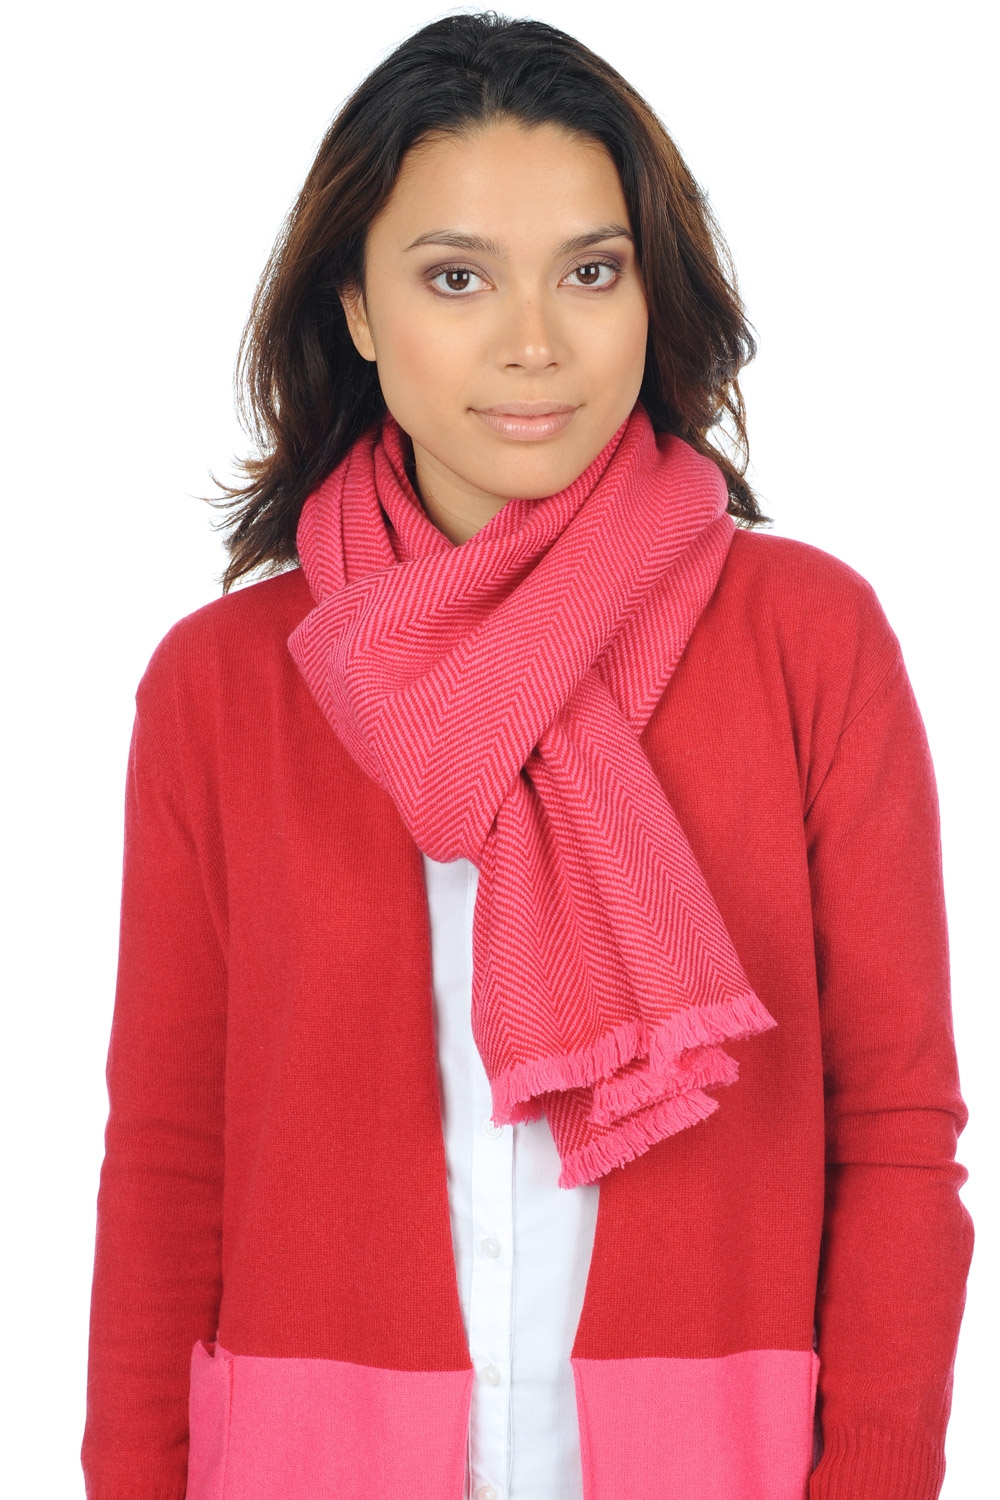 Cashmere accessori novita orage rosa shocking rosso rubino 200 x 35 cm